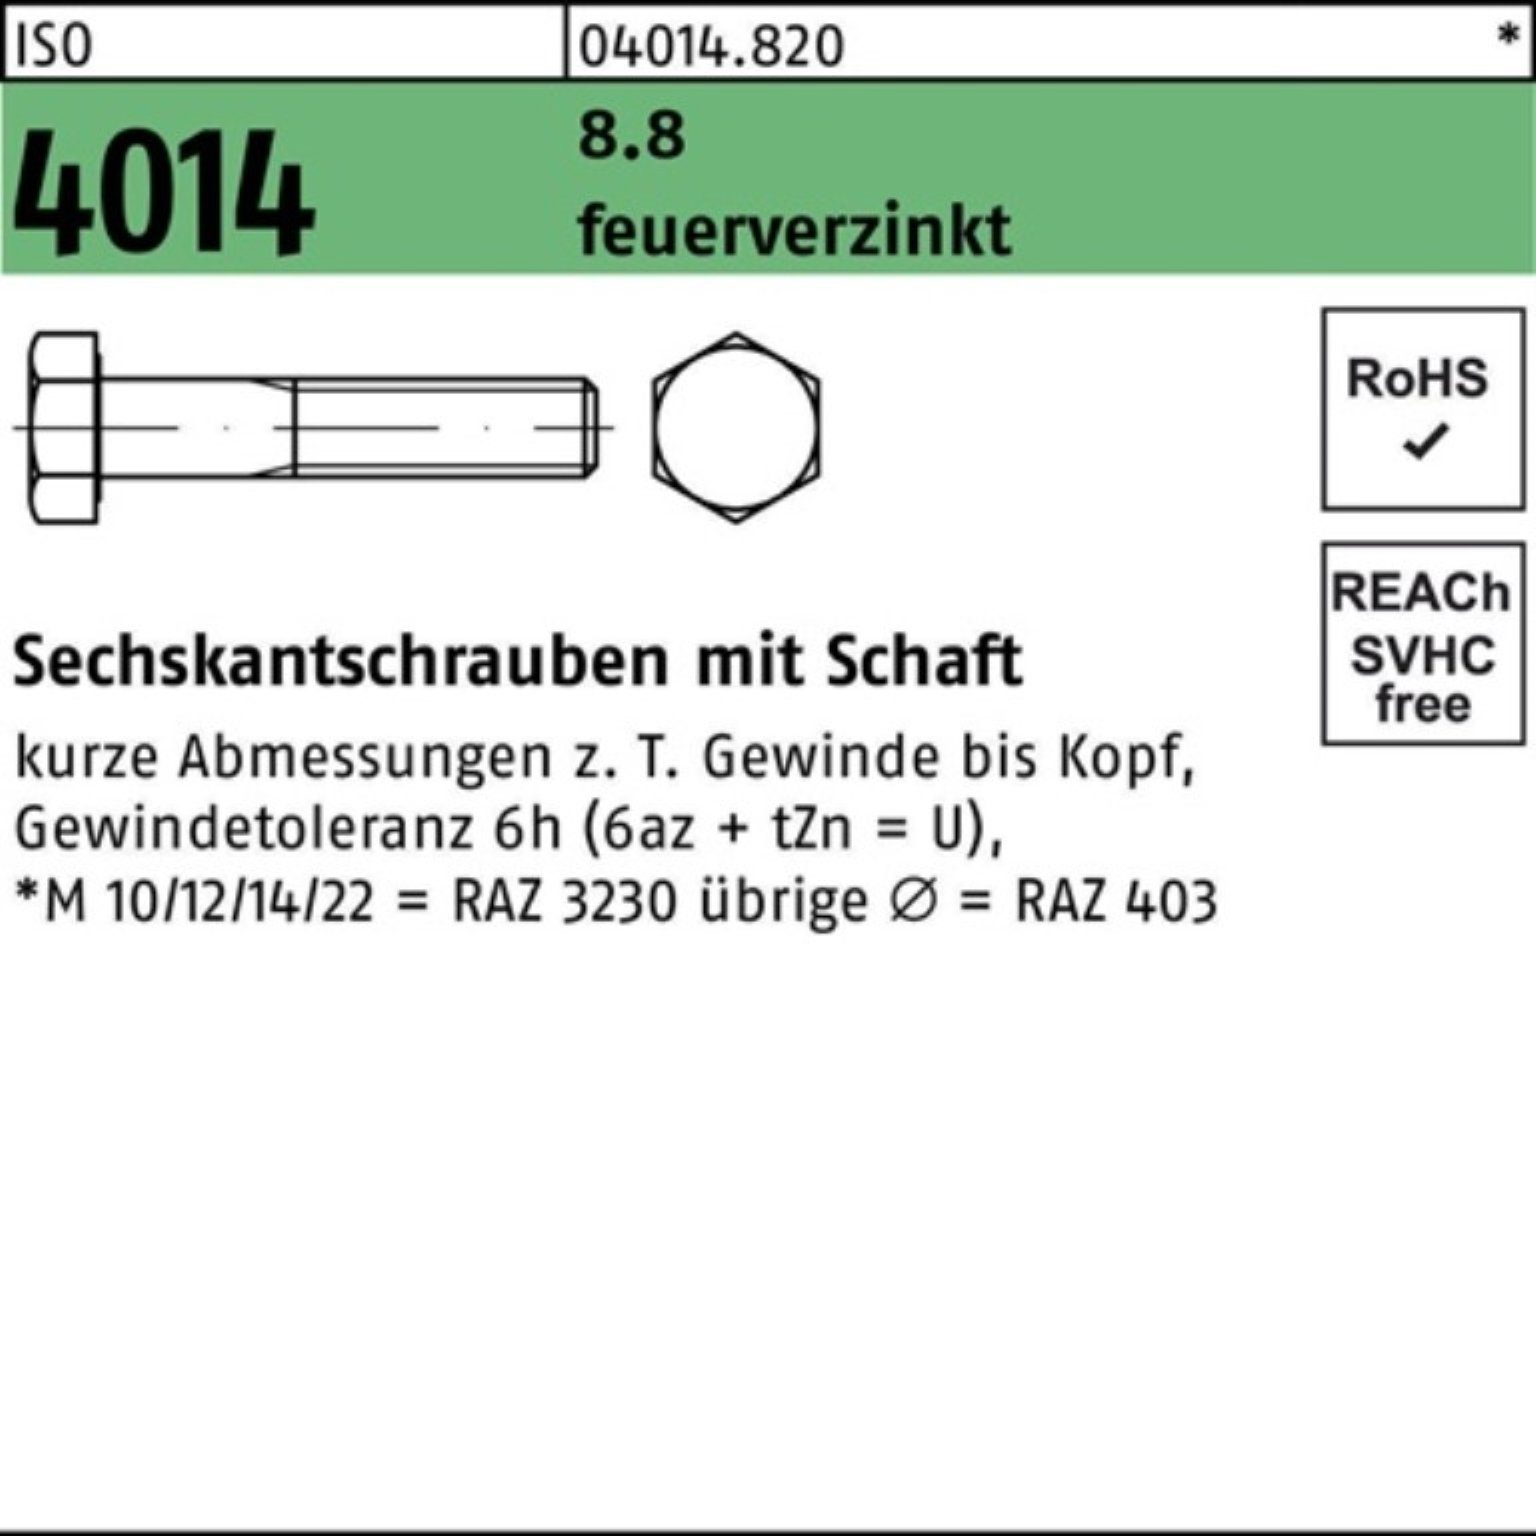 M24x Sechskantschraube 8.8 100er Sechskantschraube ISO 110 Schaft 1 4014 Pack feuerverz. Bufab